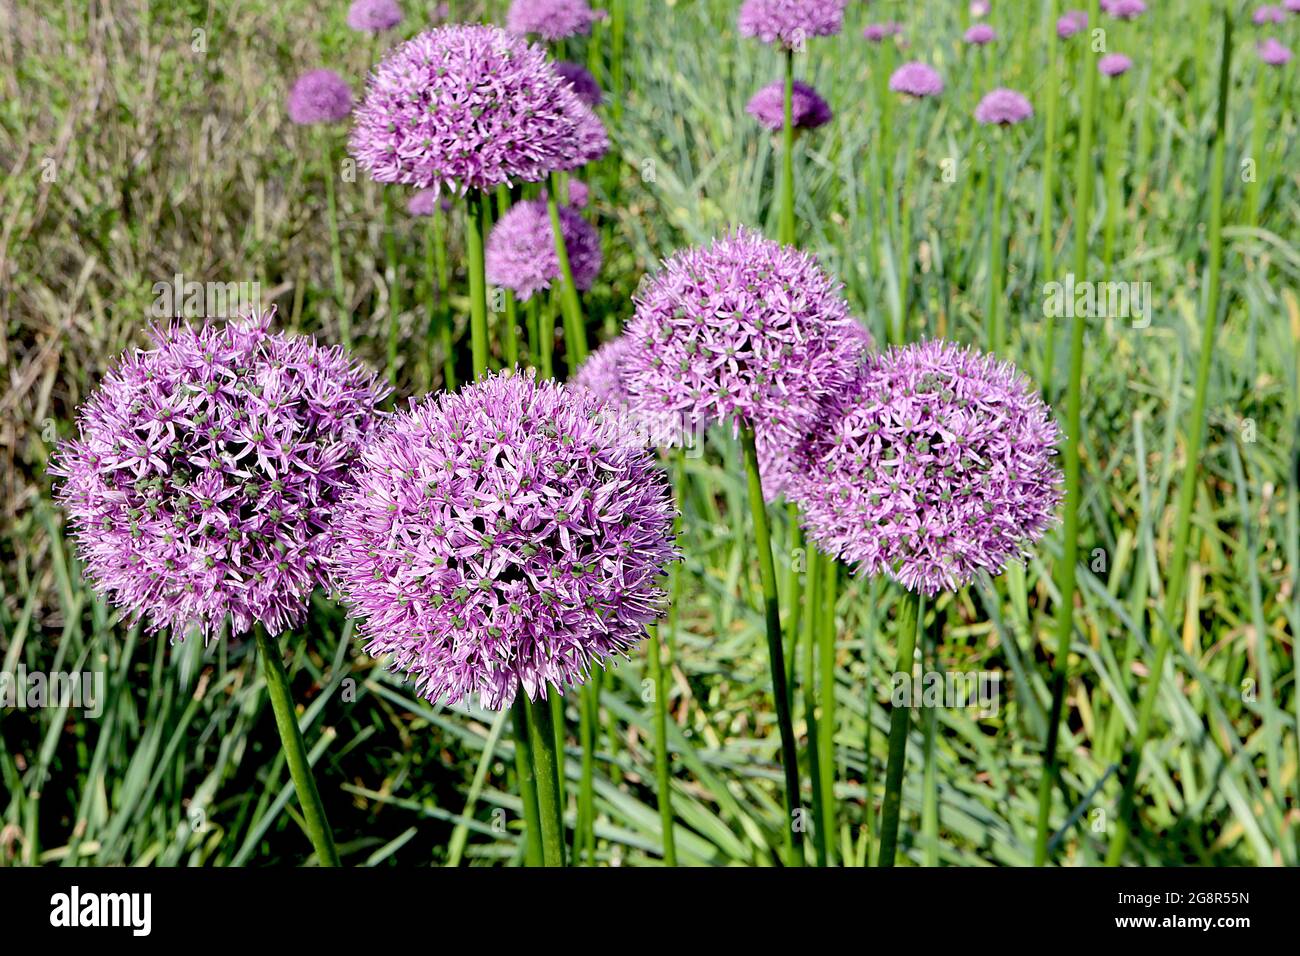 Allium ‘Gladiator’, ombelle sphérique de fleurs en forme d’étoile de rose violette, grandes tiges, mai, Angleterre, Royaume-Uni Banque D'Images